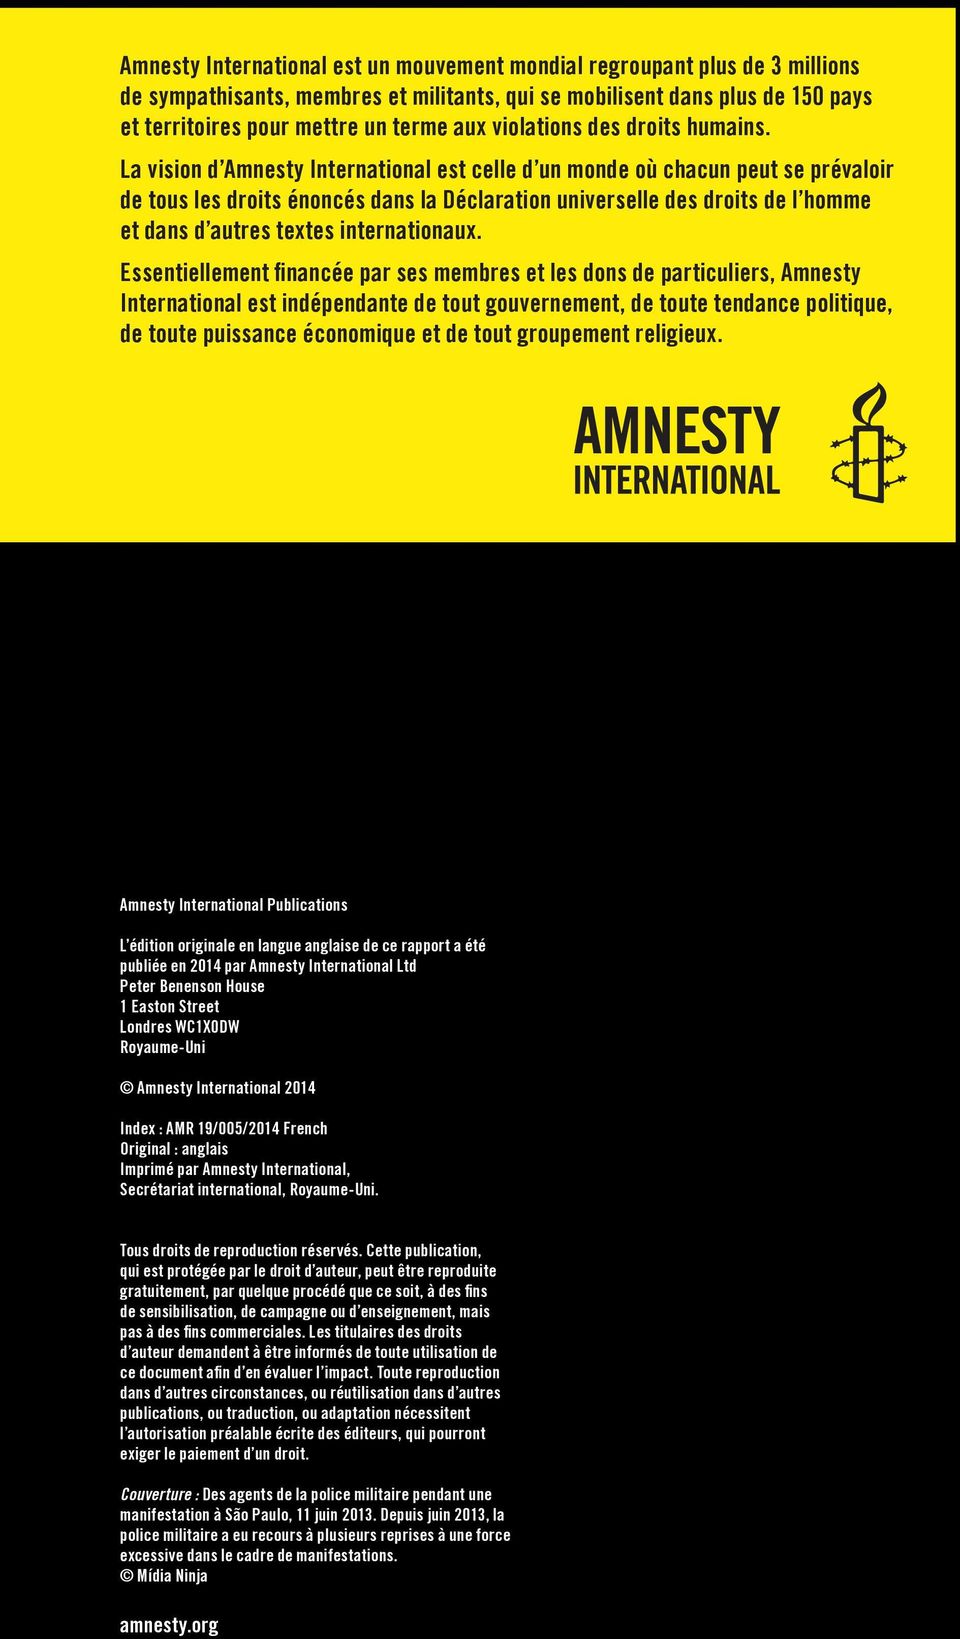 La vision d Amnesty International est celle d un monde où chacun peut se prévaloir de tous les droits énoncés dans la Déclaration universelle des droits de l homme et dans d autres textes